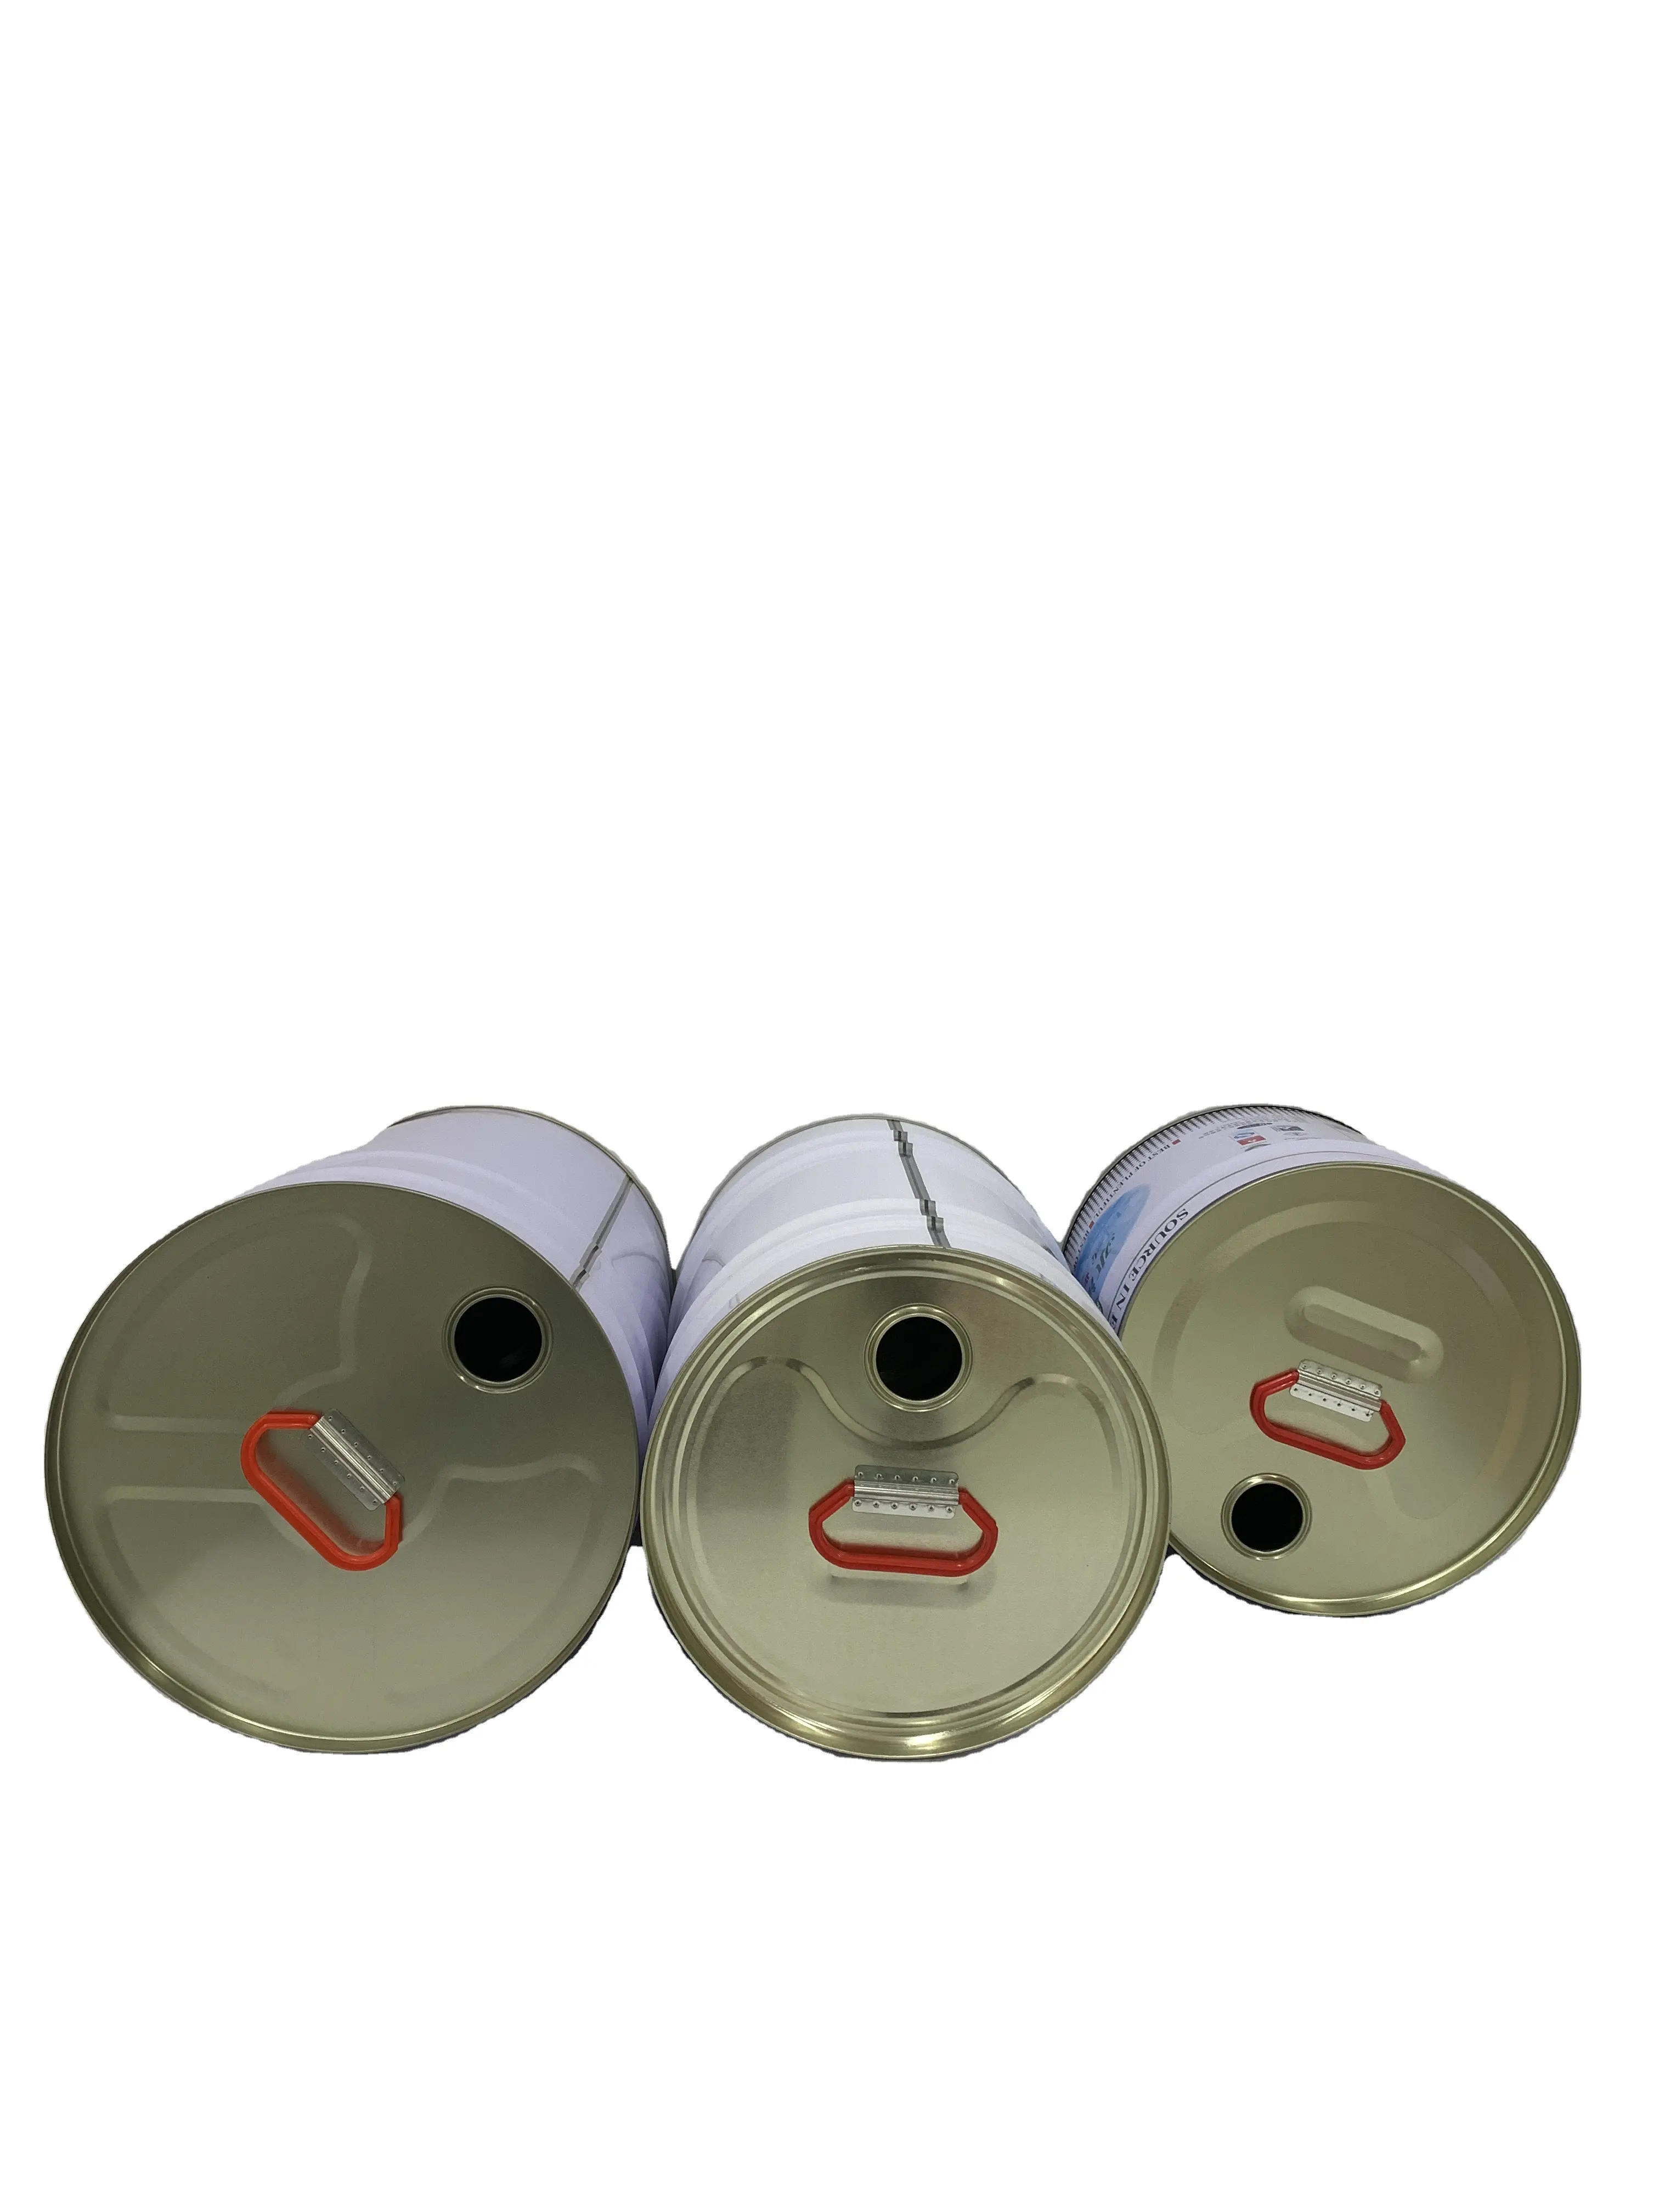 Venda por atacado de latas vazias de metal de qualidade alimentar 10L 19L 20L tambores de lata cilíndricos para armazenamento e embalagem